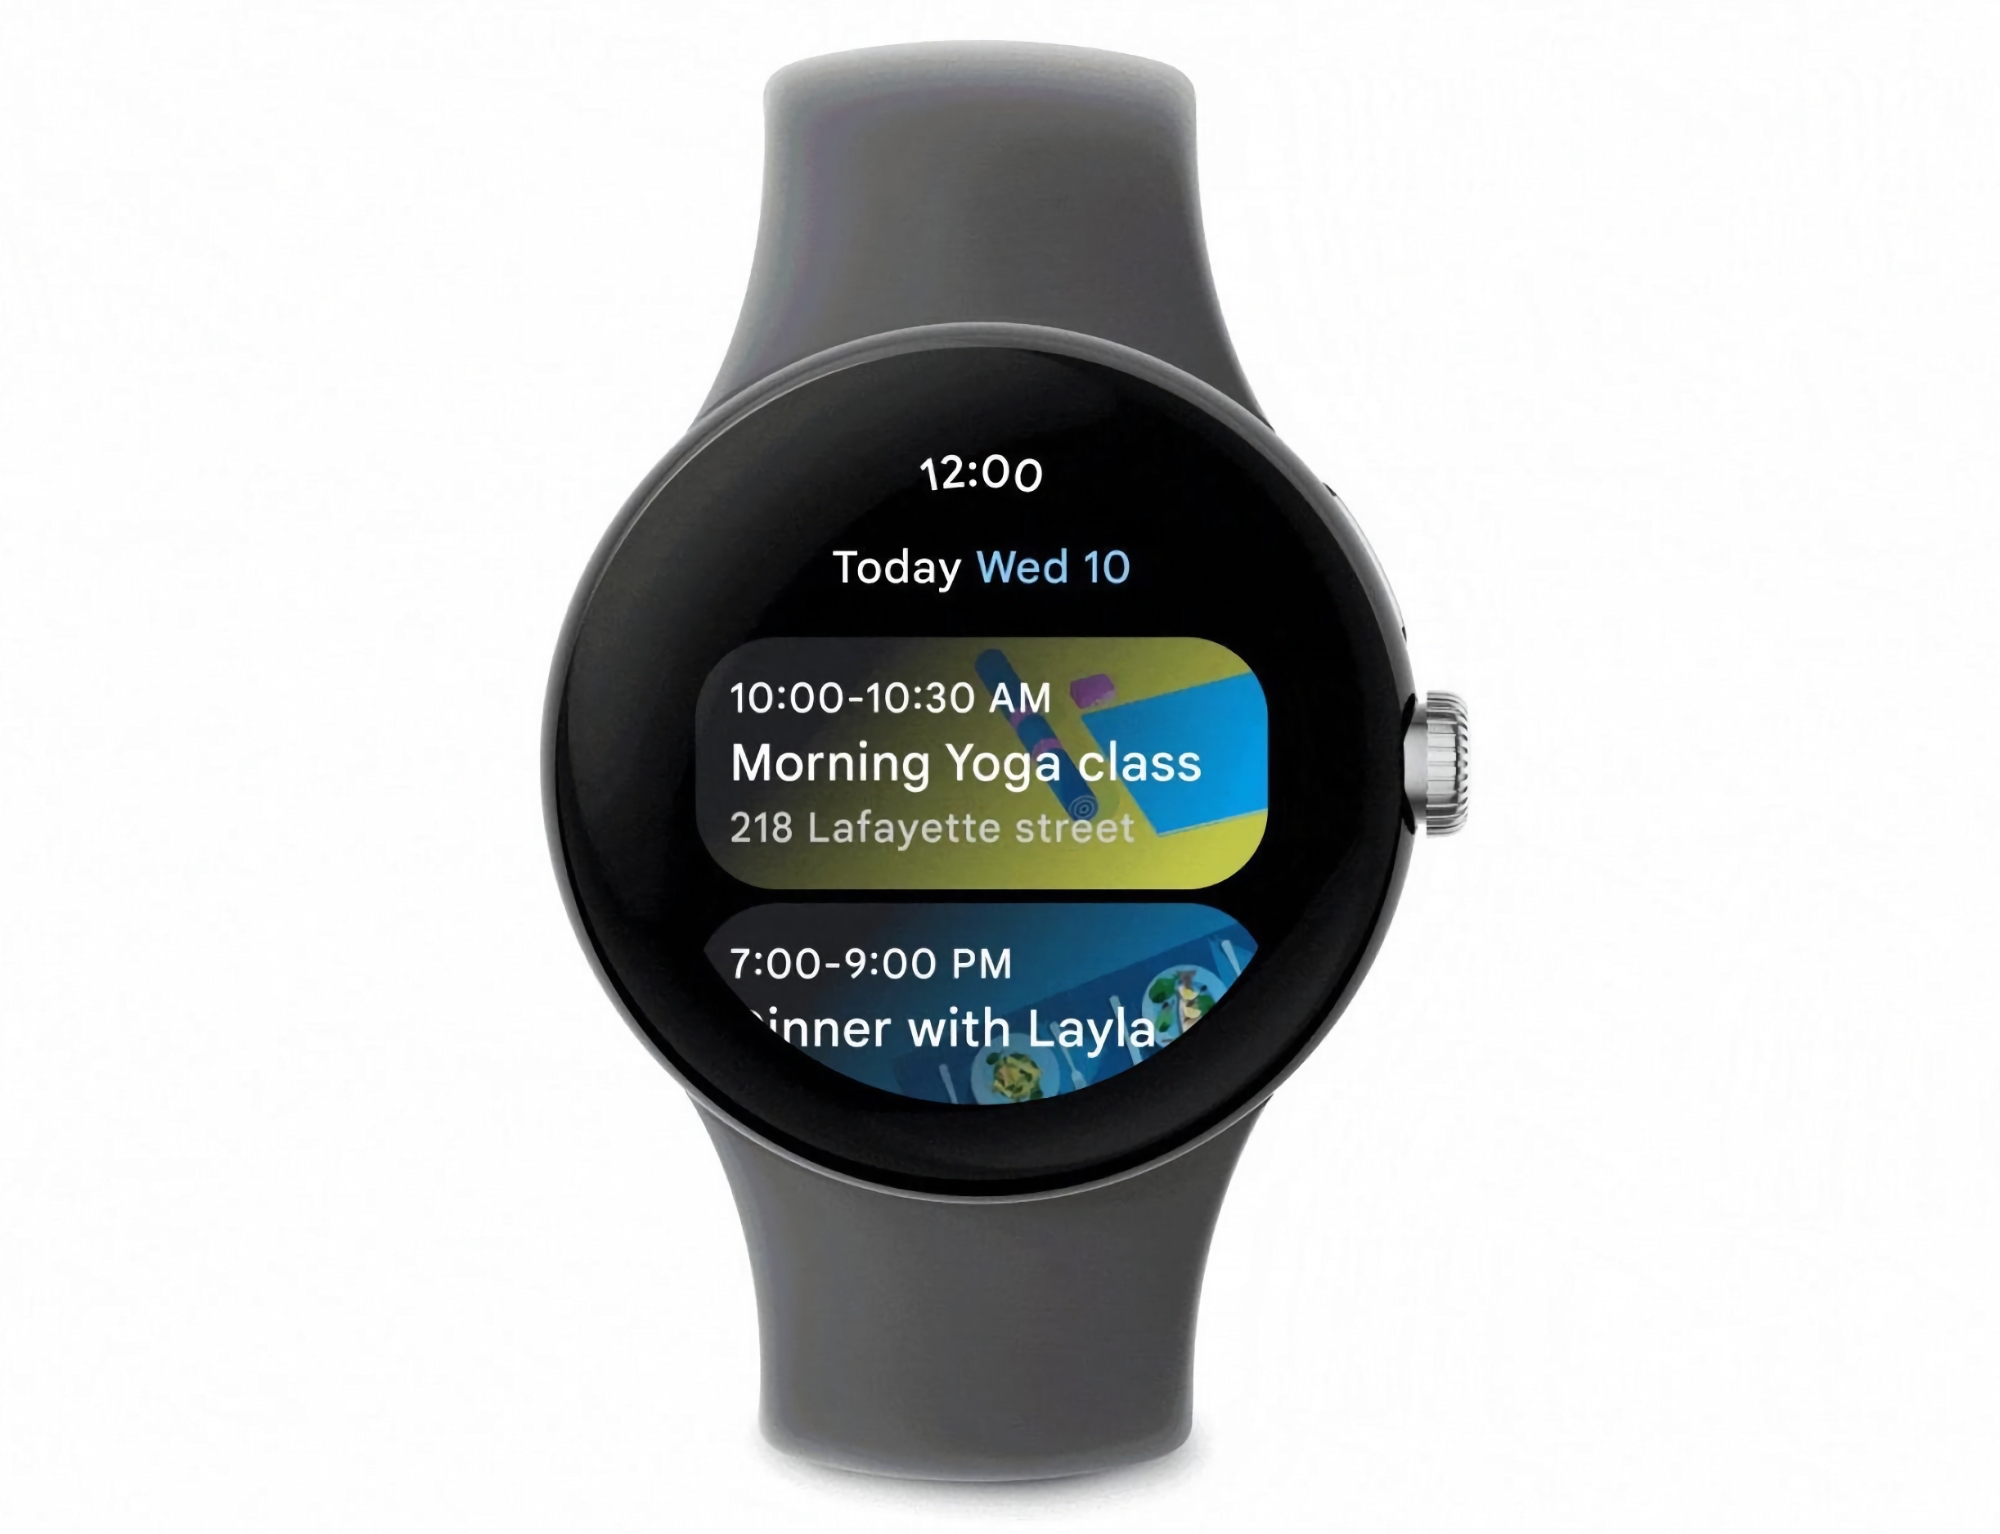 Les utilisateurs de la smartwatch Wear OS bénéficient de l'application Google Calendar